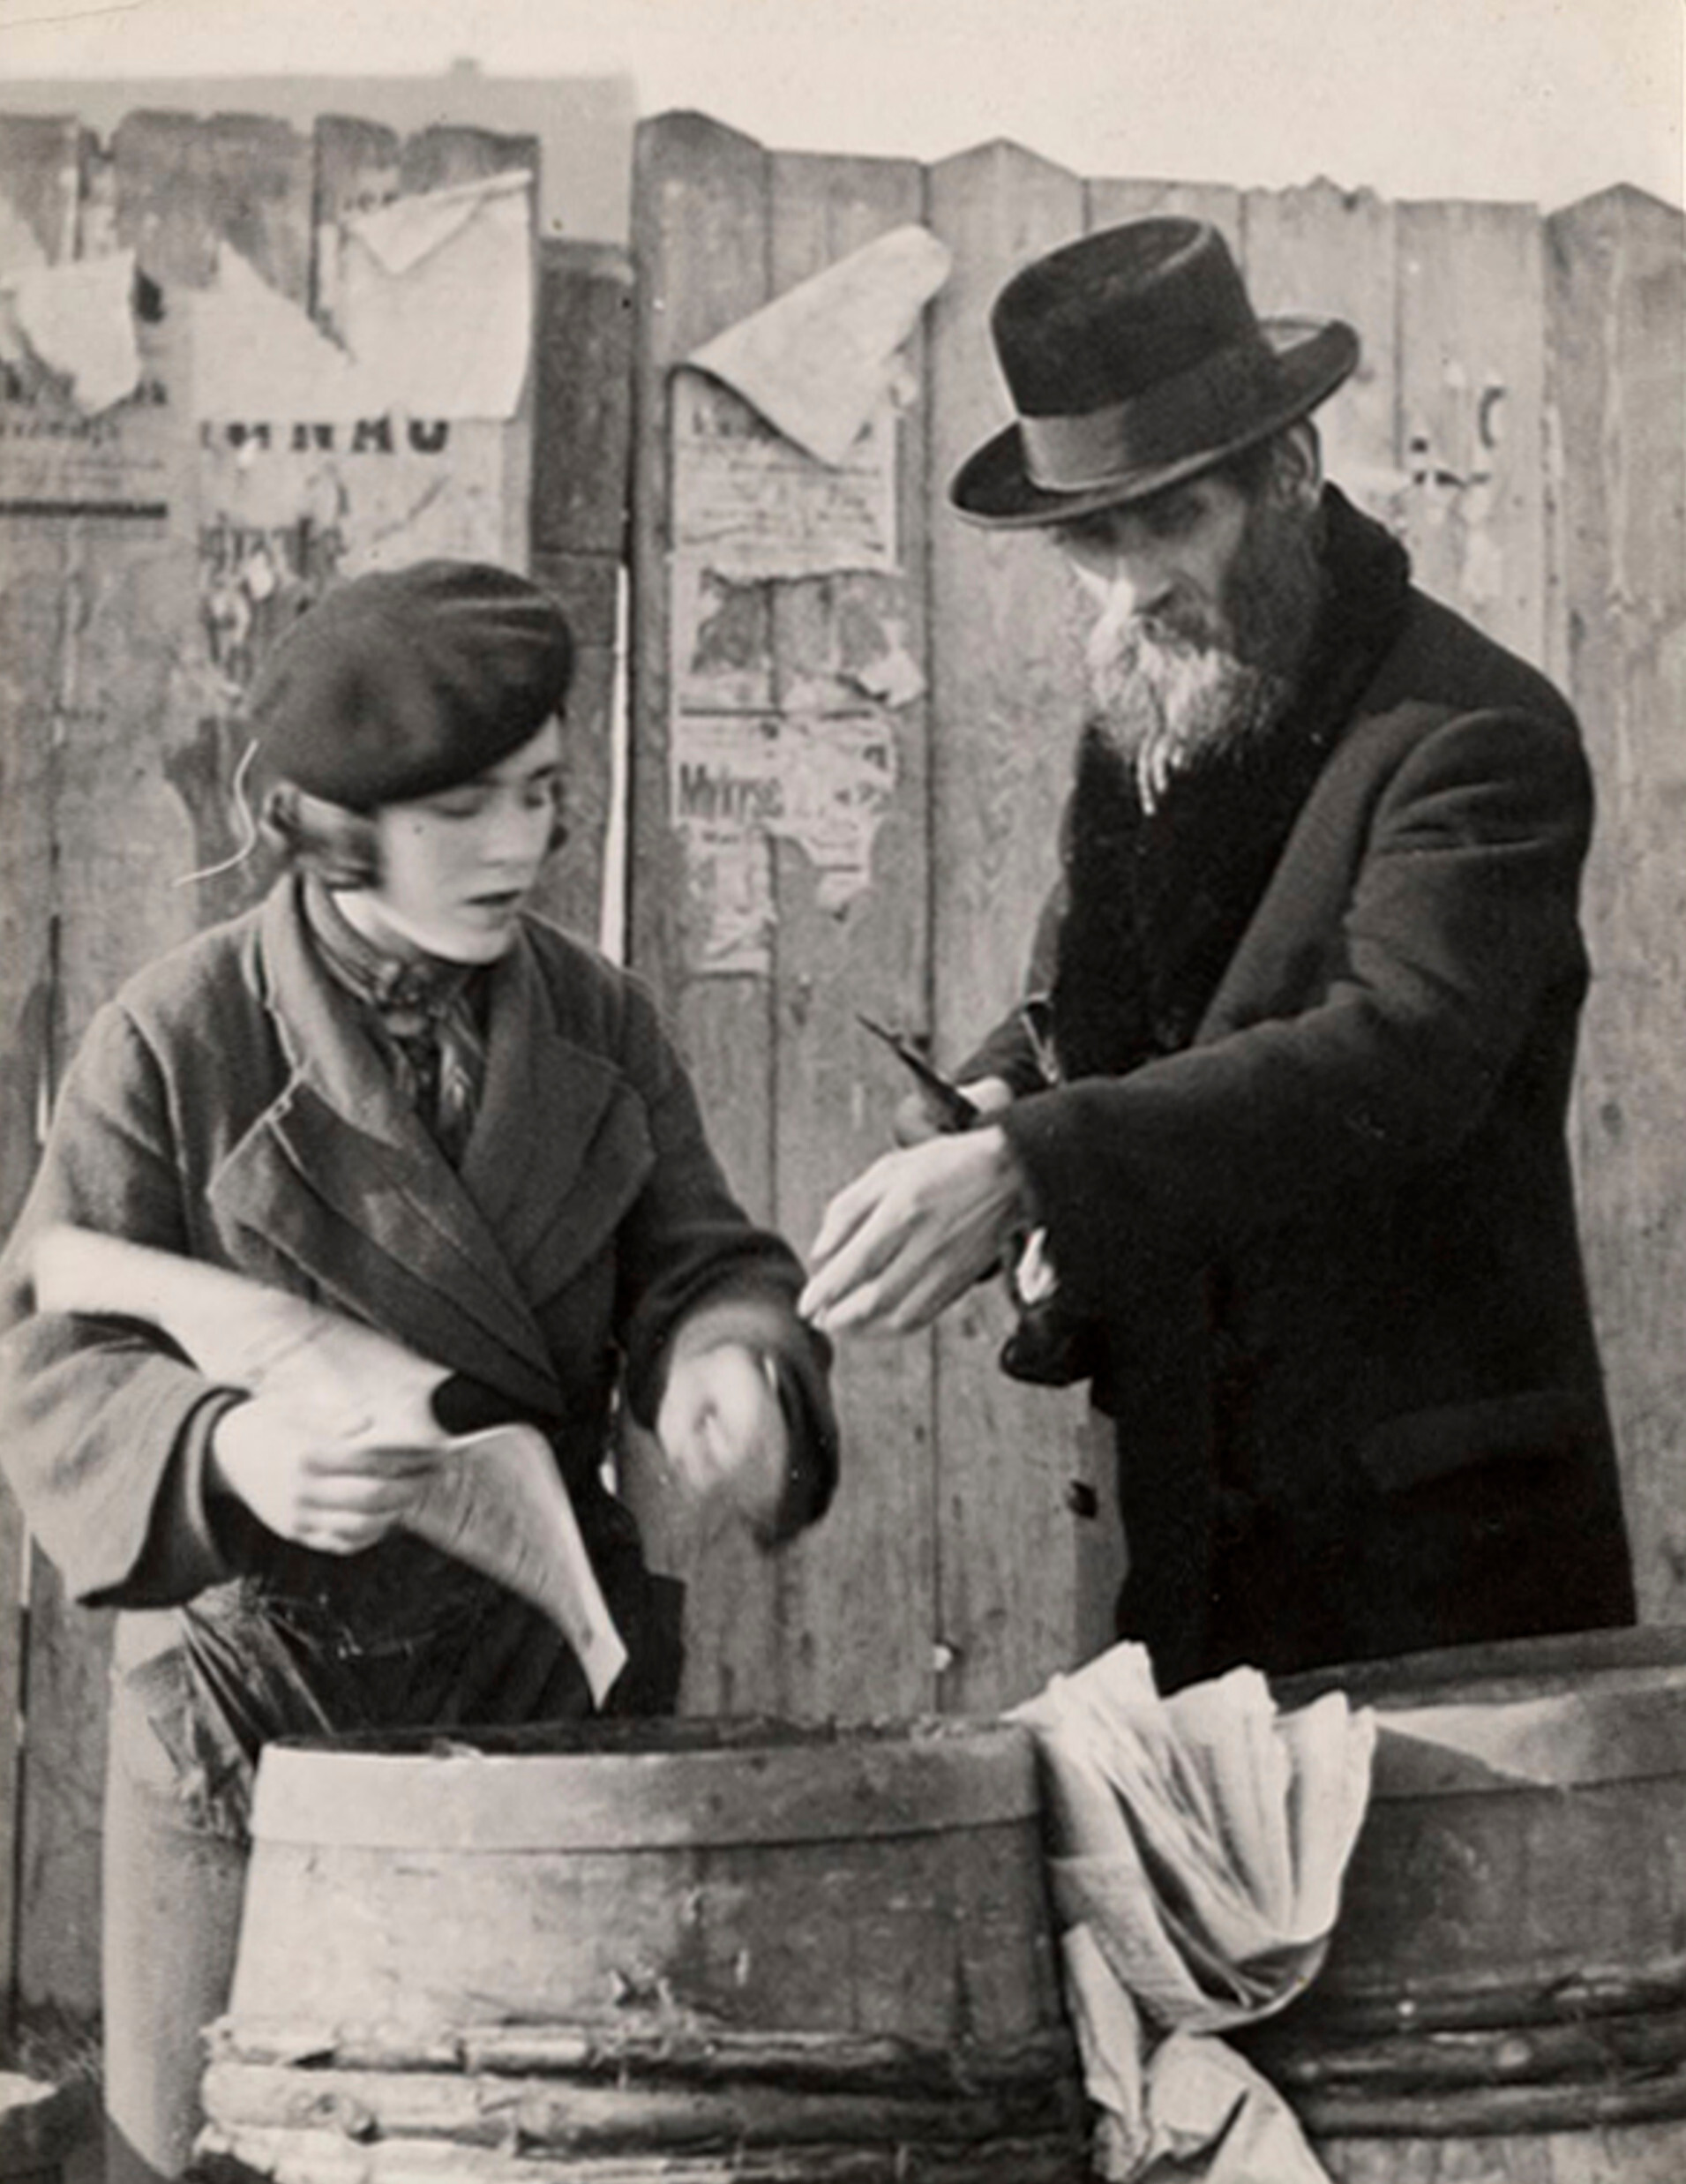 Мужчина покупает селедку, для субботней трапезы, Мукачево, ок. 1935-38 гг. Фотограф Роман Вишняк